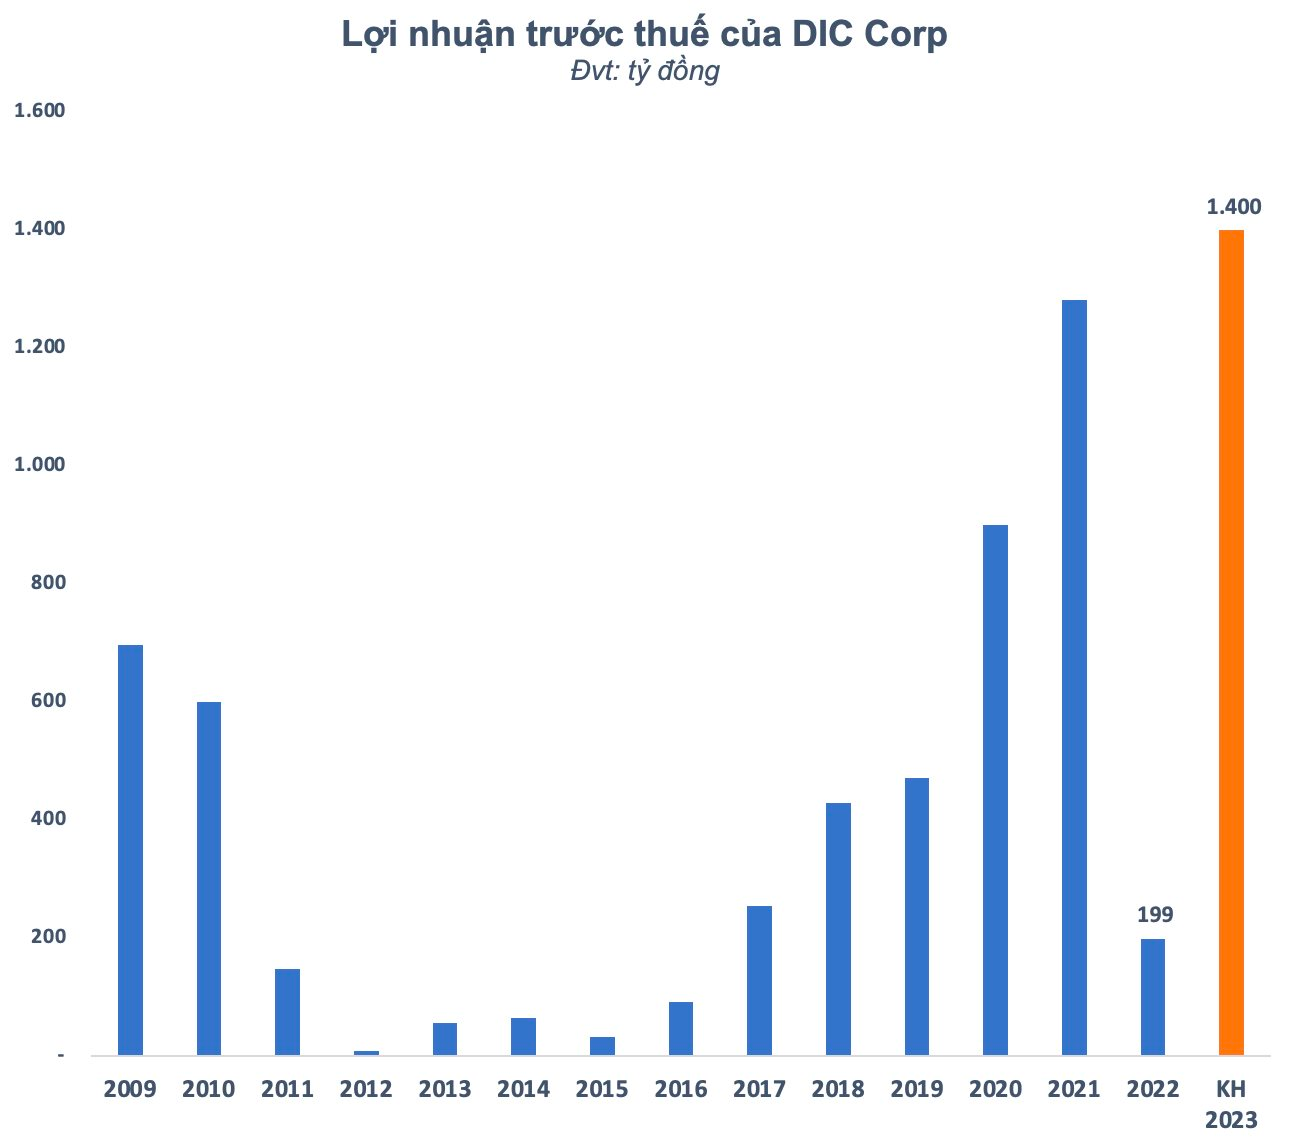 &quot;Vỡ&quot; kế hoạch 2022, DIC Corp (DIG) bất ngờ đặt mục tiêu lãi kỷ lục 1.400 tỷ đồng năm 2023 - Ảnh 1.